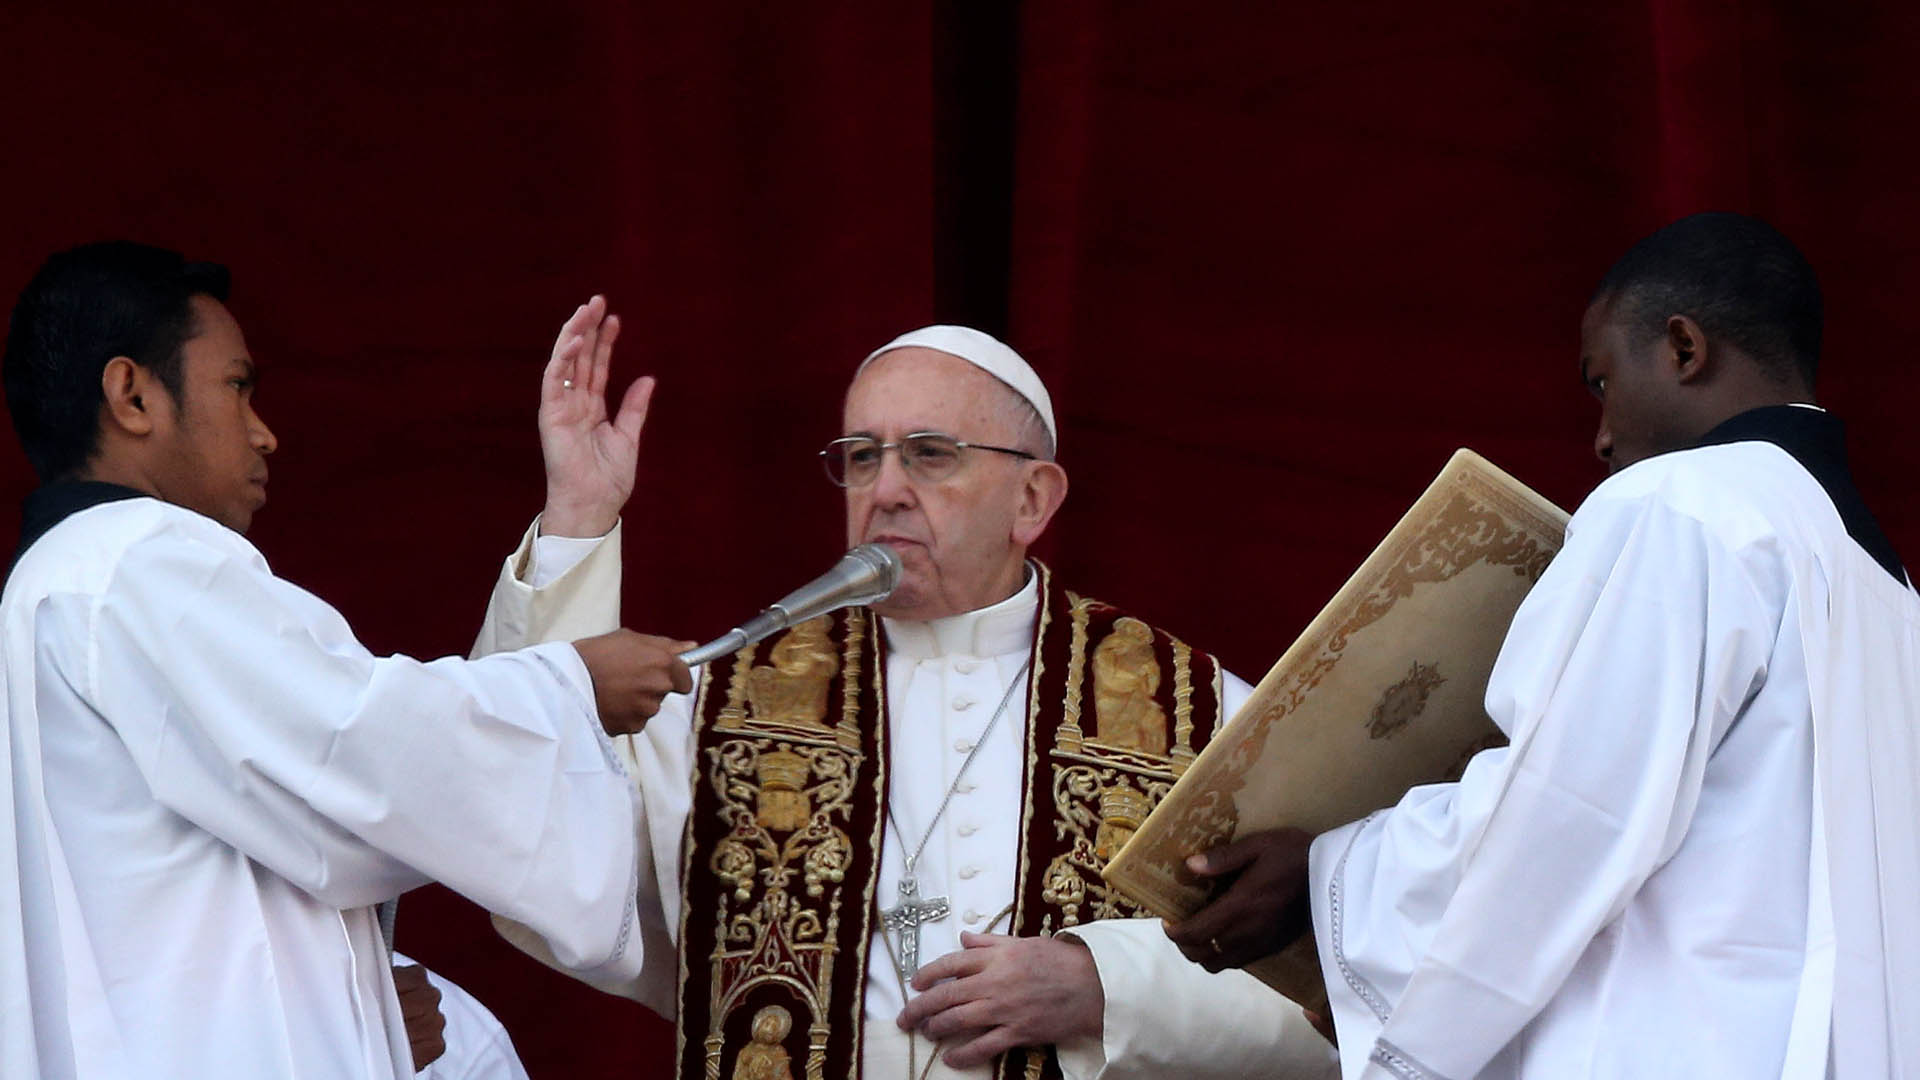 El Sumo Pontífice expresó sus deseos de reconciliación en Venezuela para que "se edifique conjuntamente un futuro de esperanza"